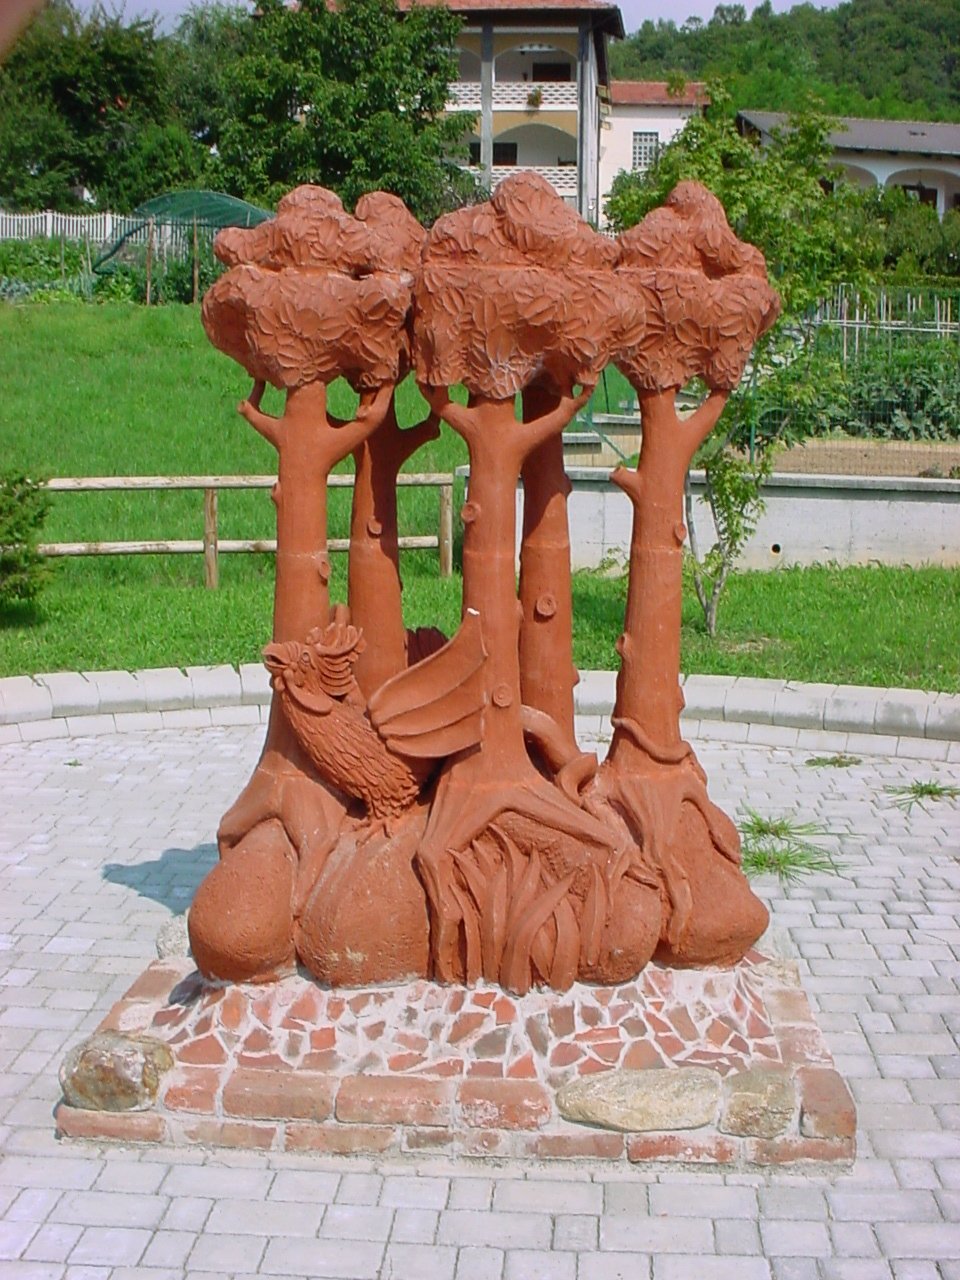 [Particolare del monumento al Basilisco sito nel giardino comunale prospiciente Piazza Don Spagna in Cintano]